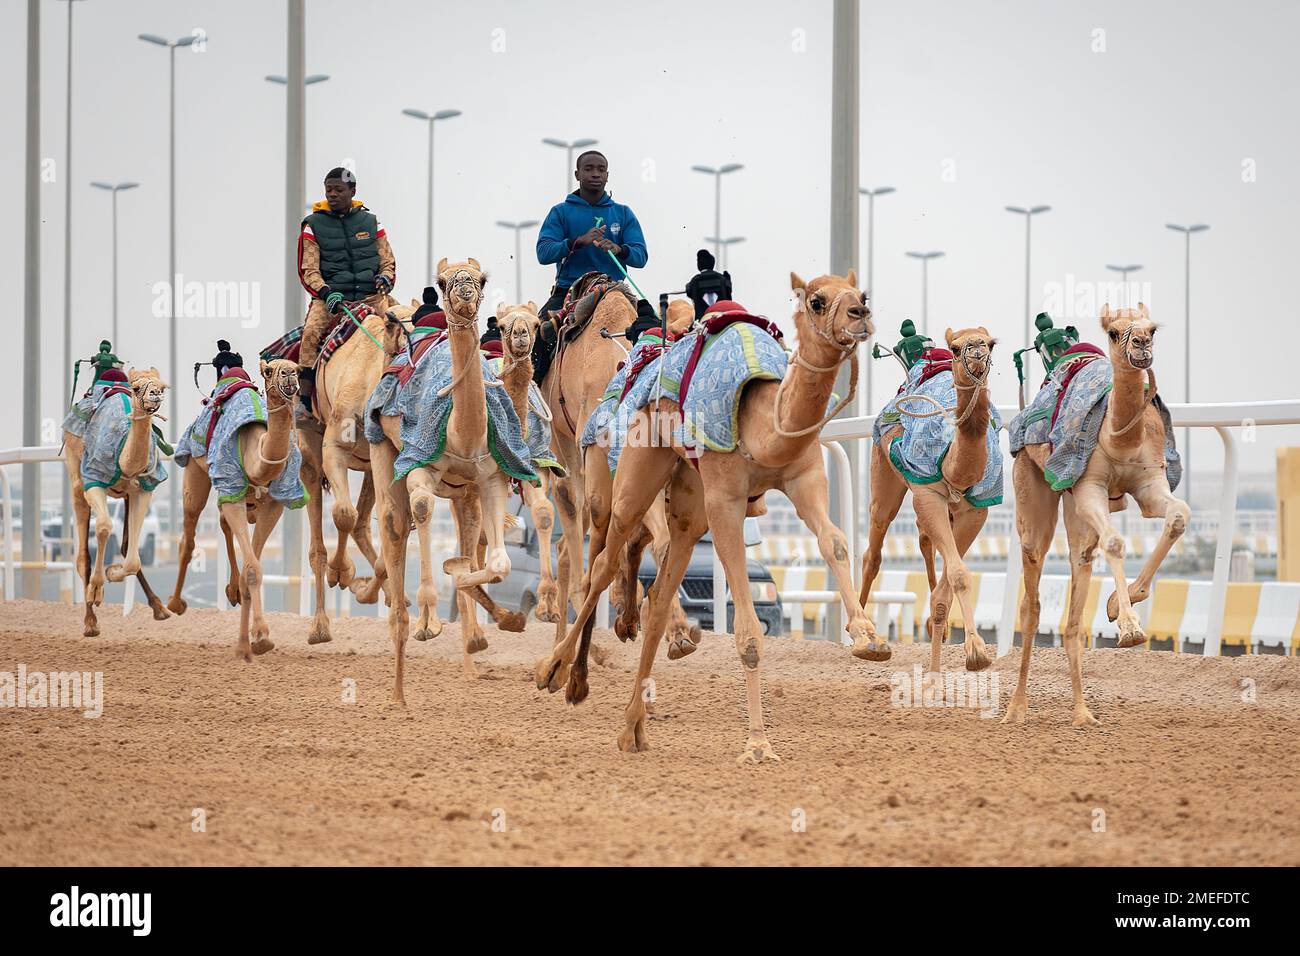 Circuit de course de chameau Shehania Doha Qatar. Culture arabe traditionnelle du Qatar Banque D'Images